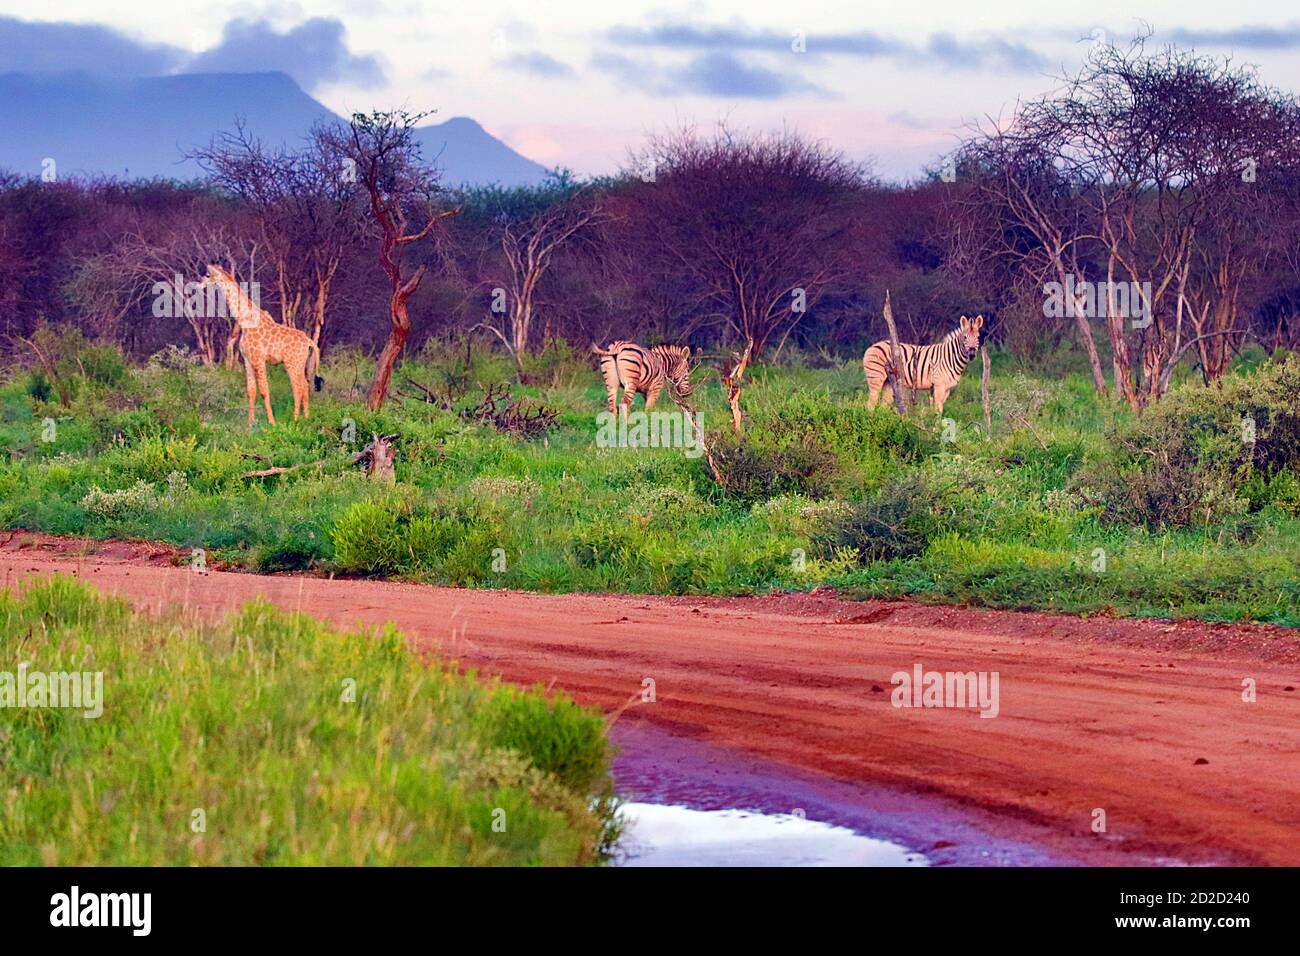 Girafes sud-africains (Giraffa camelopardalis giraffa) et Zèbres des plaines (Equus quagga) par la route de la réserve d'Erindi, région d'Erongo, Namibie. Banque D'Images